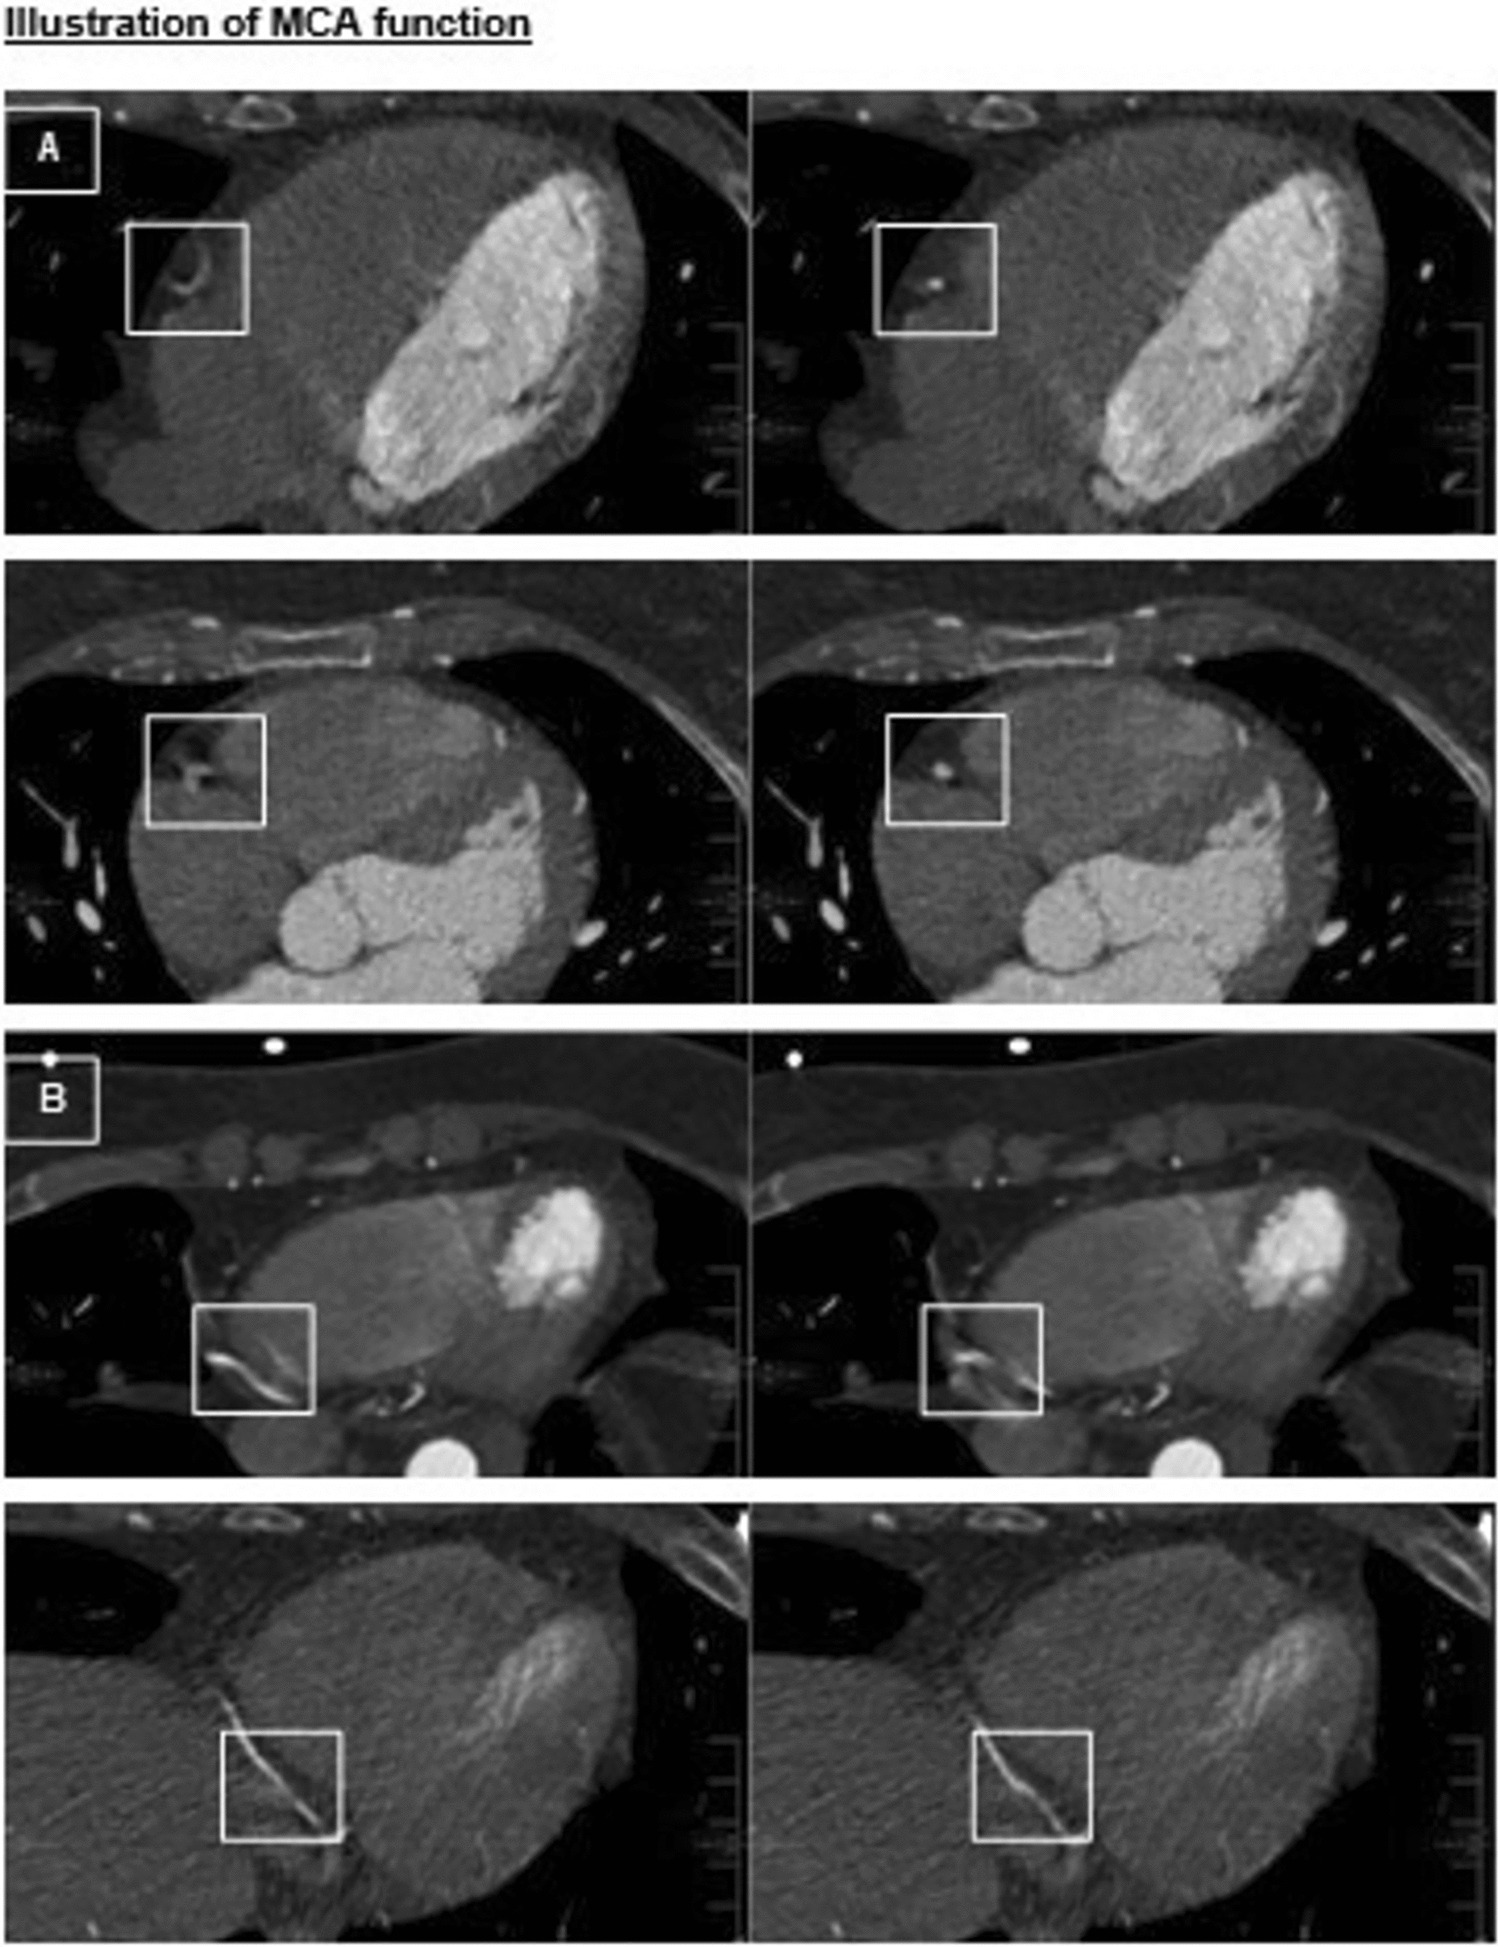 Optimizing Coronary Computed Tomography Angiography Using a Novel Deep Learning-Based Algorithm